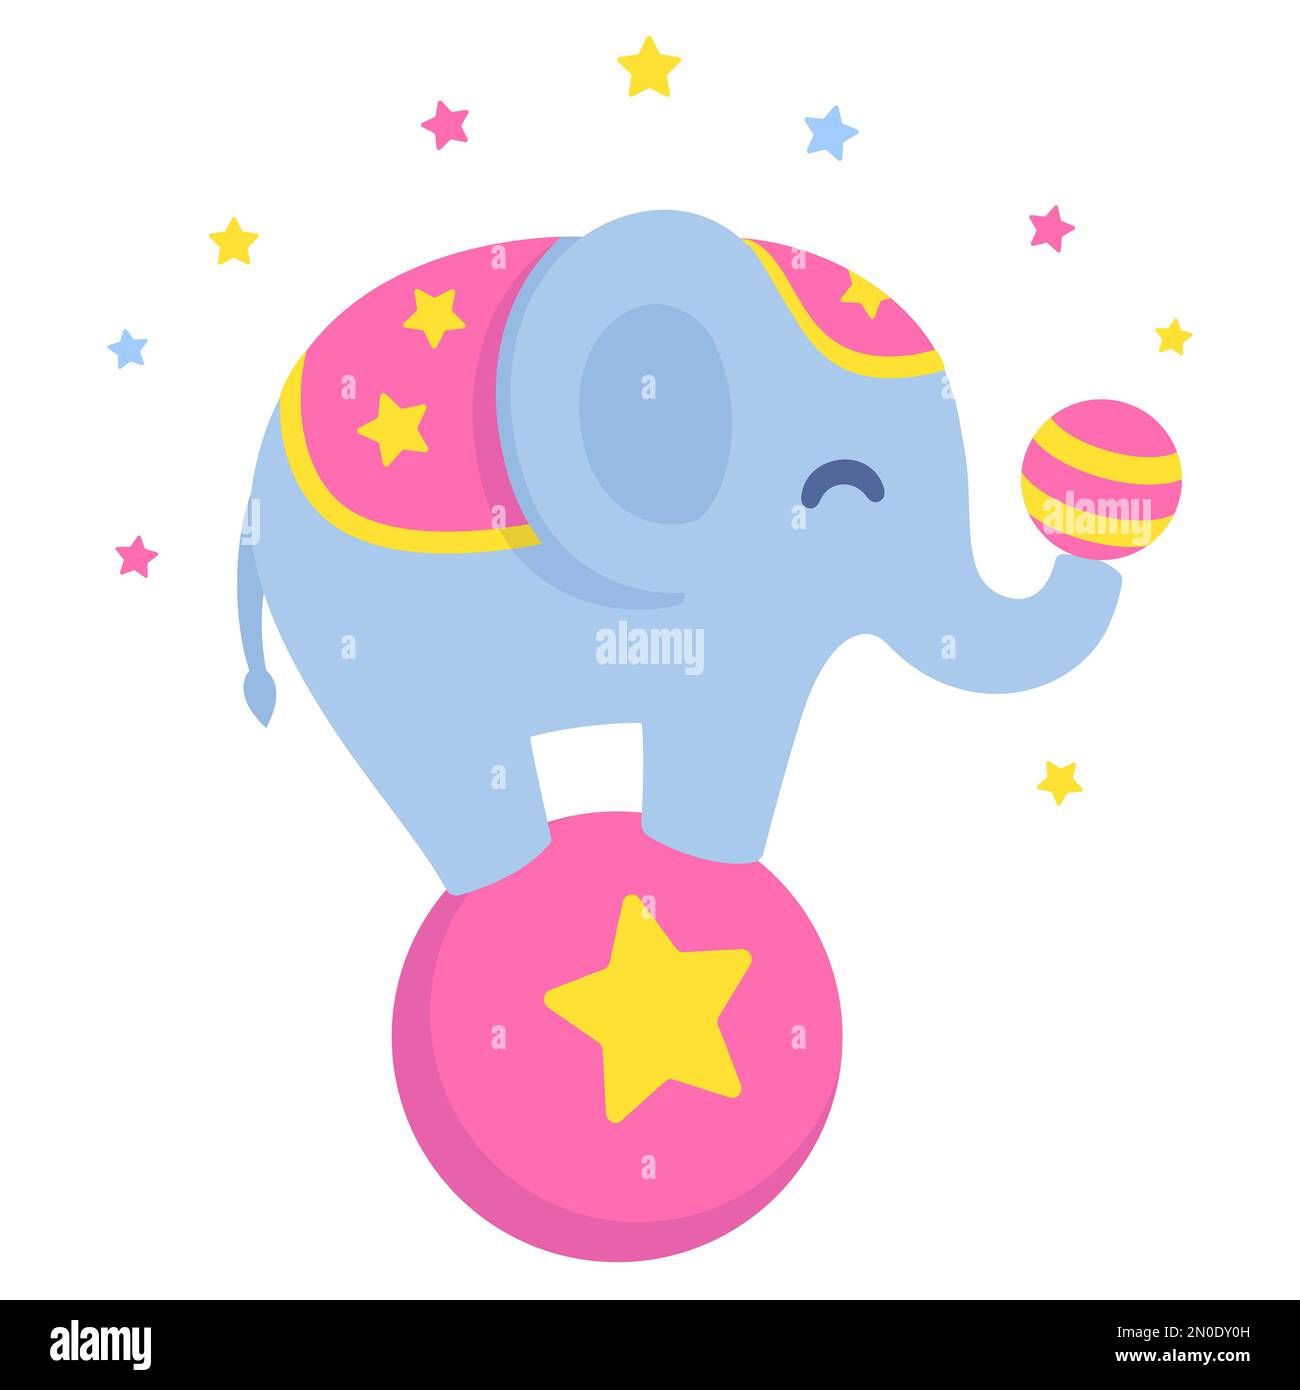 Ein Zirkuselefant, der auf einem großen Ball balanciert und mit einem kleineren Ball jongliert. Niedliche und lustige ClipArt-Illustration im Vektorstil. Stock Vektor